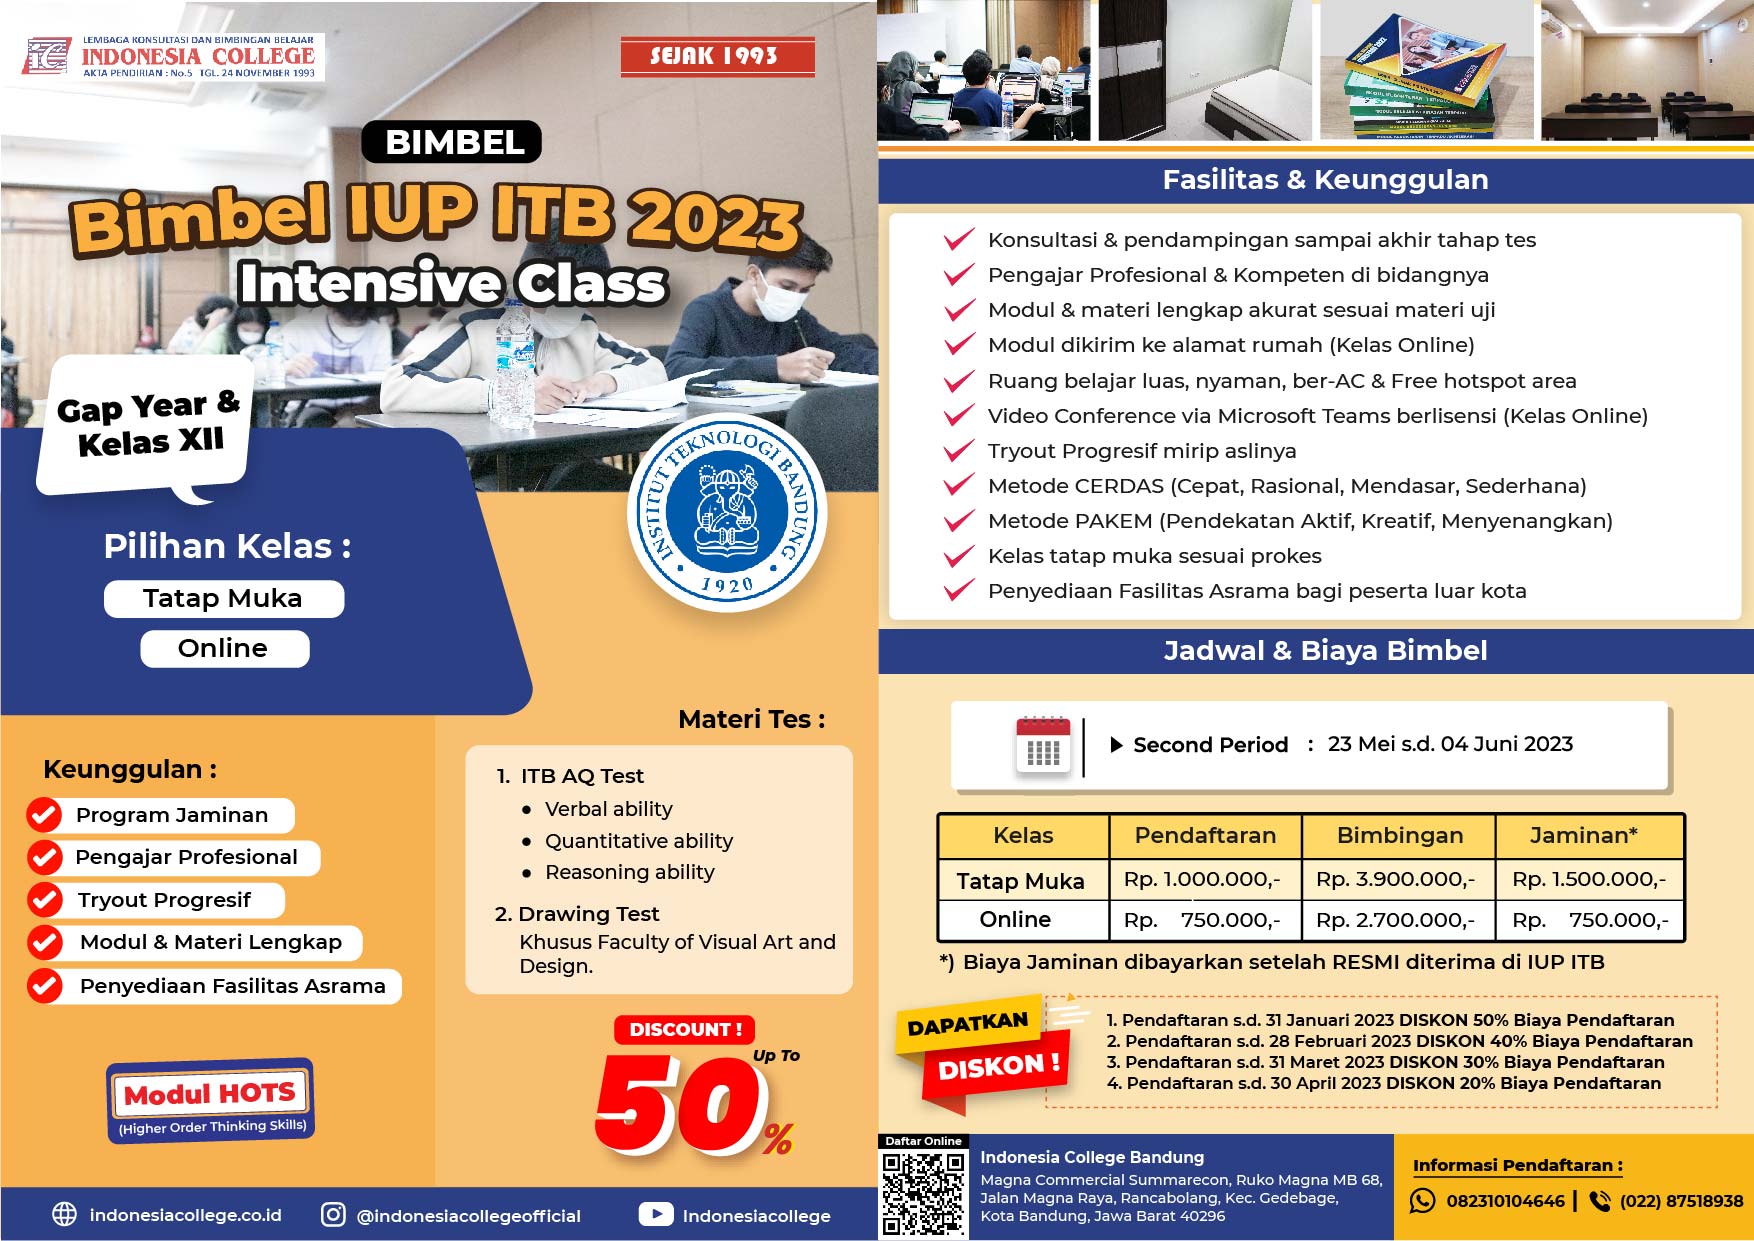 Bimbel IUP ITB 2023 - Indonesia College